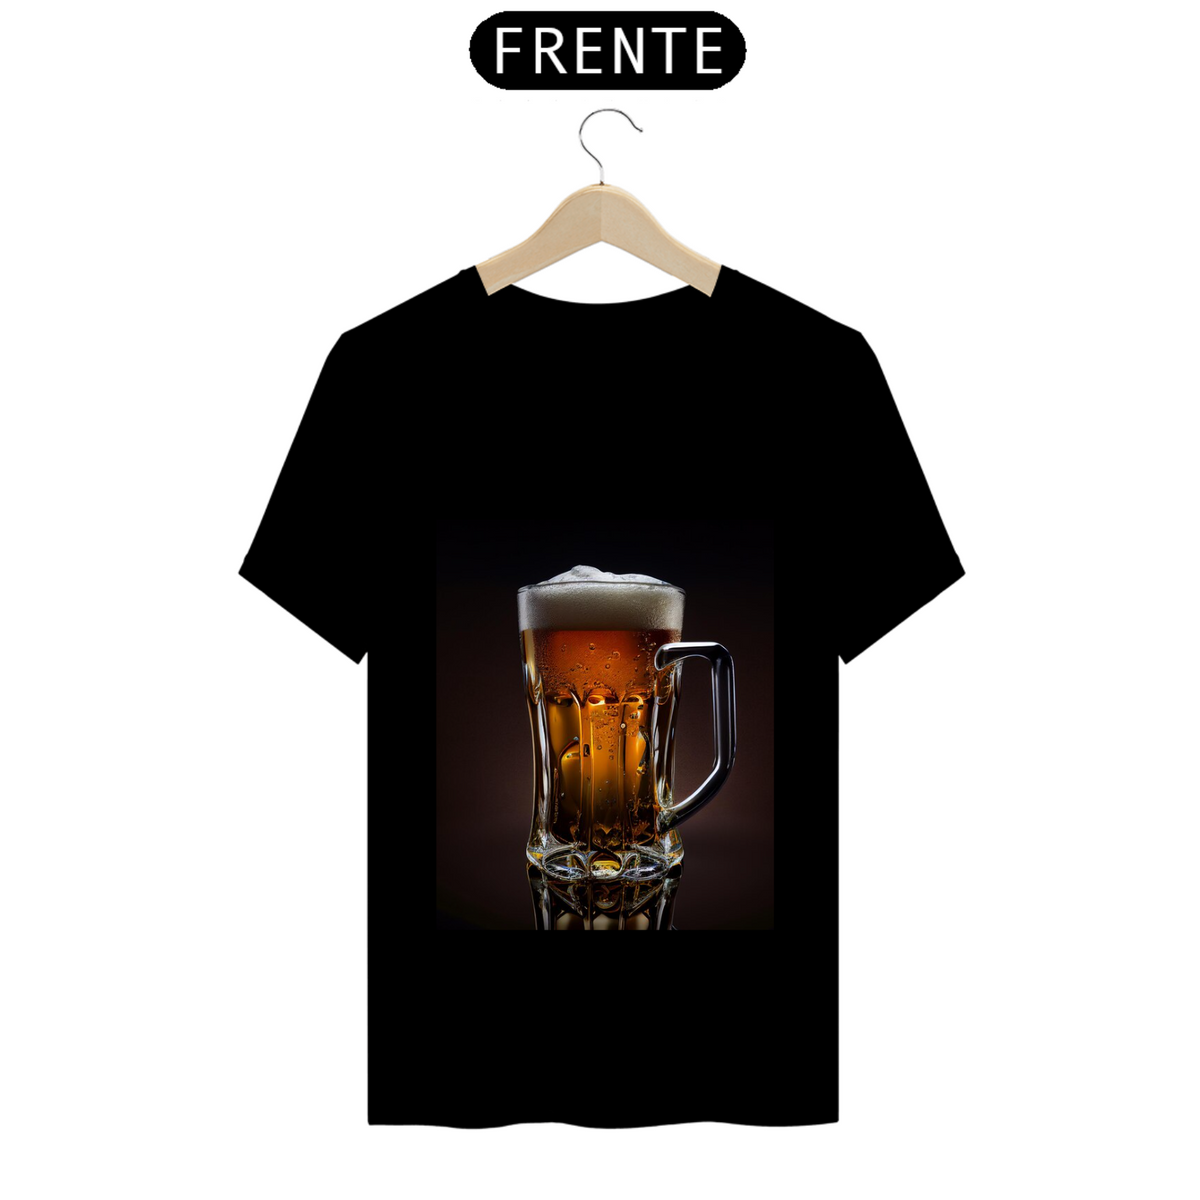 Nome do produto: Camiseta copo de cerveja/ Beer